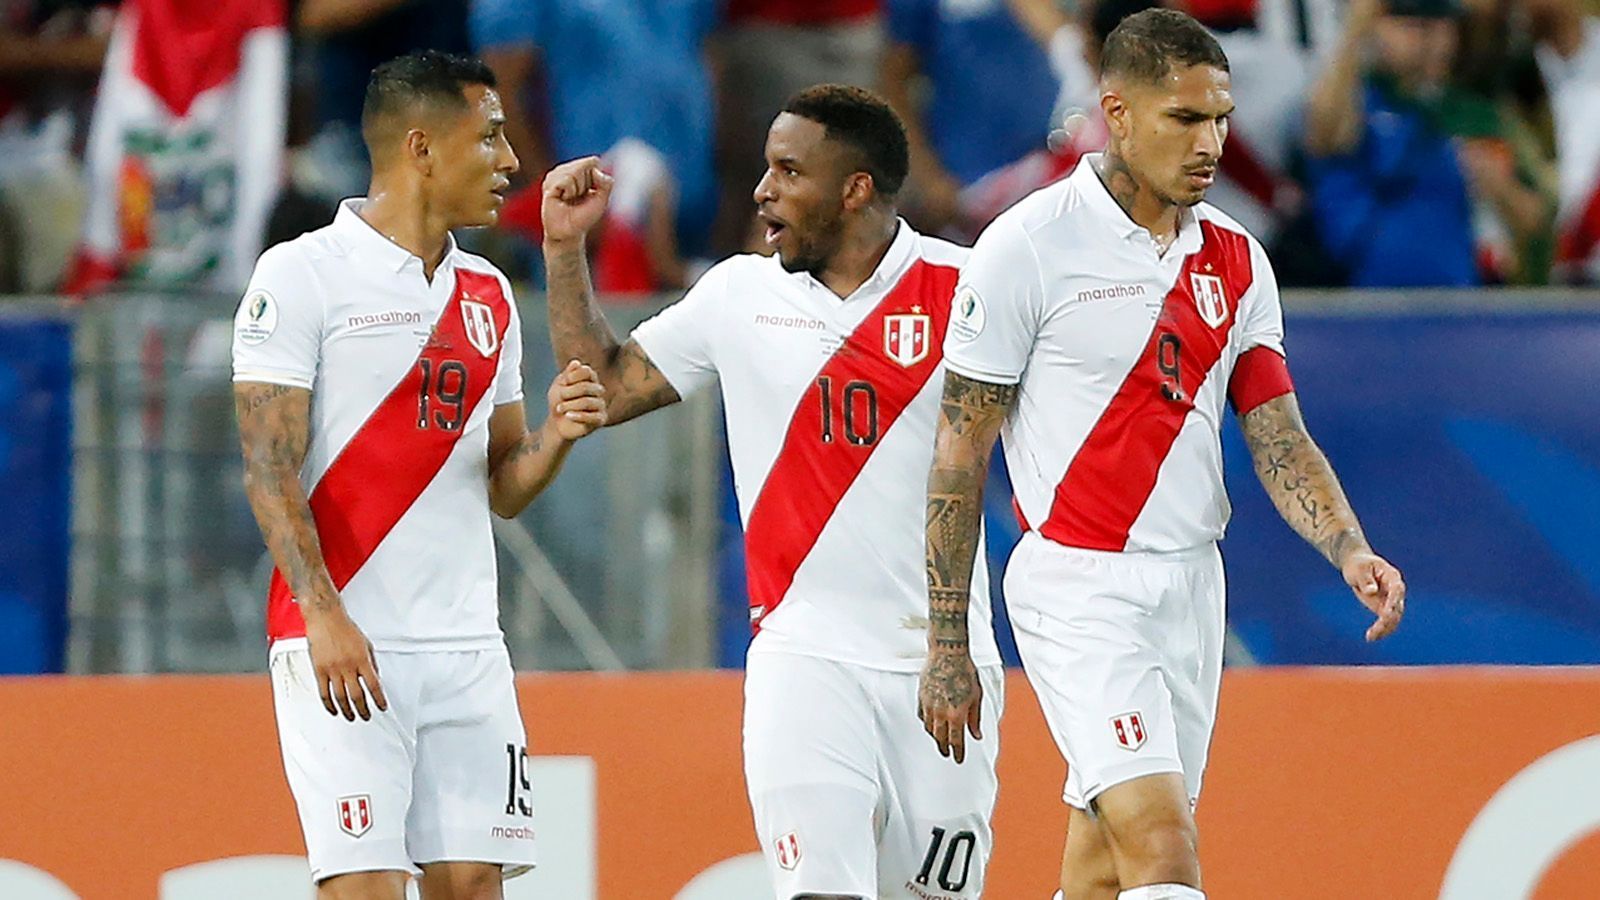 
                <strong>Platz 7: Peru</strong><br>
                Die Peruaner zogen als einer der zwei besten Gruppendritten ins Viertelfinale ein, wo Rekordsieger Uruguay wartet. Im letzten Gruppenspiel setzte es einen herben Dämpfer für die Peruaner, als sie gegen Gastgeber Brasilien mit 0:5 unter die Räder kamen. Zuvor gab es einen Sieg gegen Bolivien, die Gruppenletzter wurden. Im Auftaktspiel biss man sich an Venezuela die Zähne aus (0:0). Der Ex-Schalker Jefferson Farfan wird wegen einer Knieverletzung für den Rest des Turniers ausfallen. Der 34-Jährige kam zuvor in allen drei Gruppenspielen der Peruaner (1 Tor) zum Einsatz und zählt zu den erfahrensten Spielern im Aufgebot von Ricardo Gareca.ran.de-Fazit: Die Brasilien-Klatsche sitzt möglicherweise noch zu tief in den Gliedern, um im Viertelfinale bestehen zu können. Für Peru dürfte Endstation sein.
              